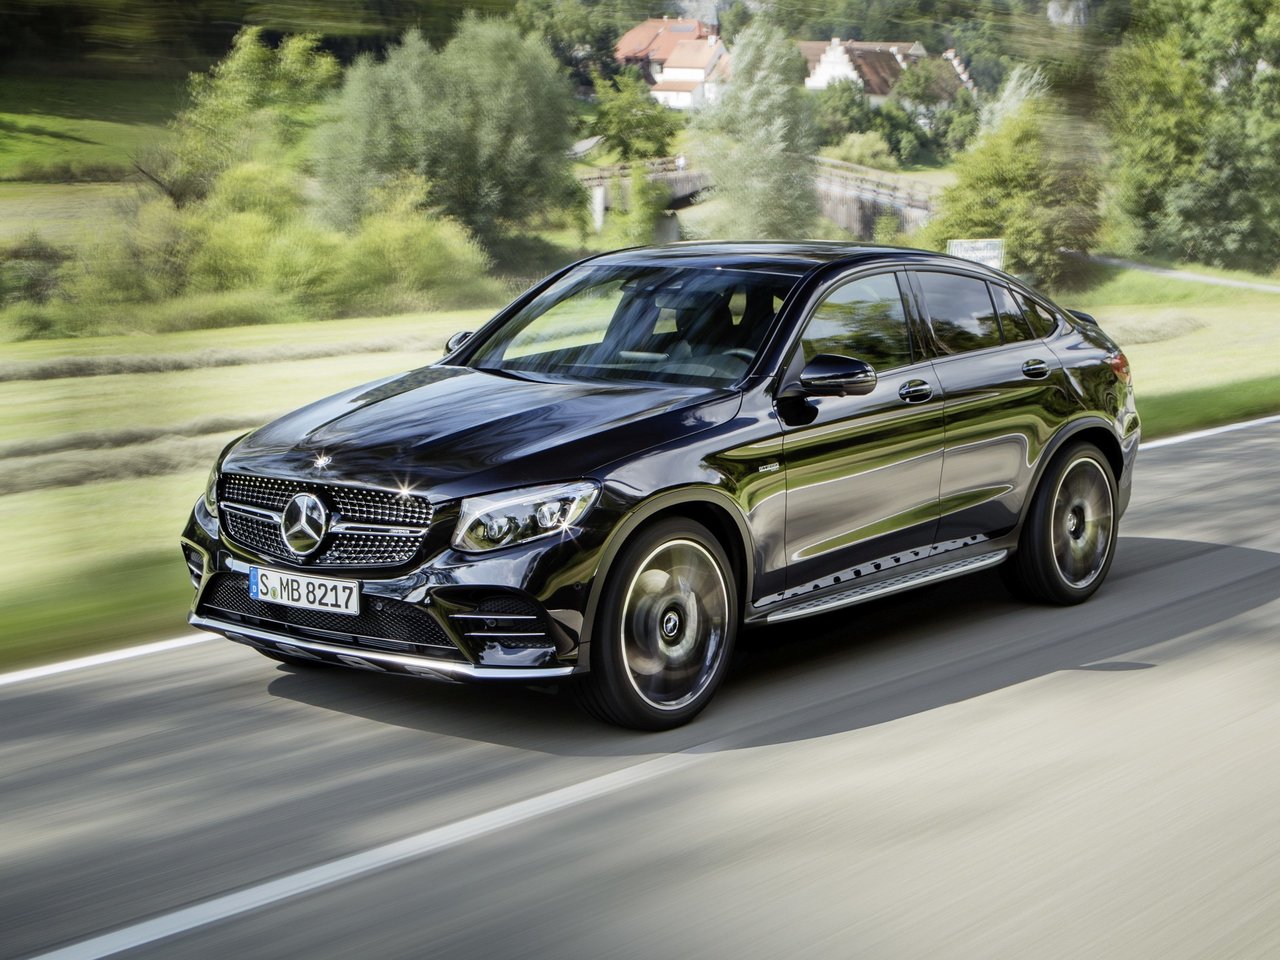 Снижаем расход Mercedes-Benz GLC Coupe AMG на топливо, устанавливаем ГБО